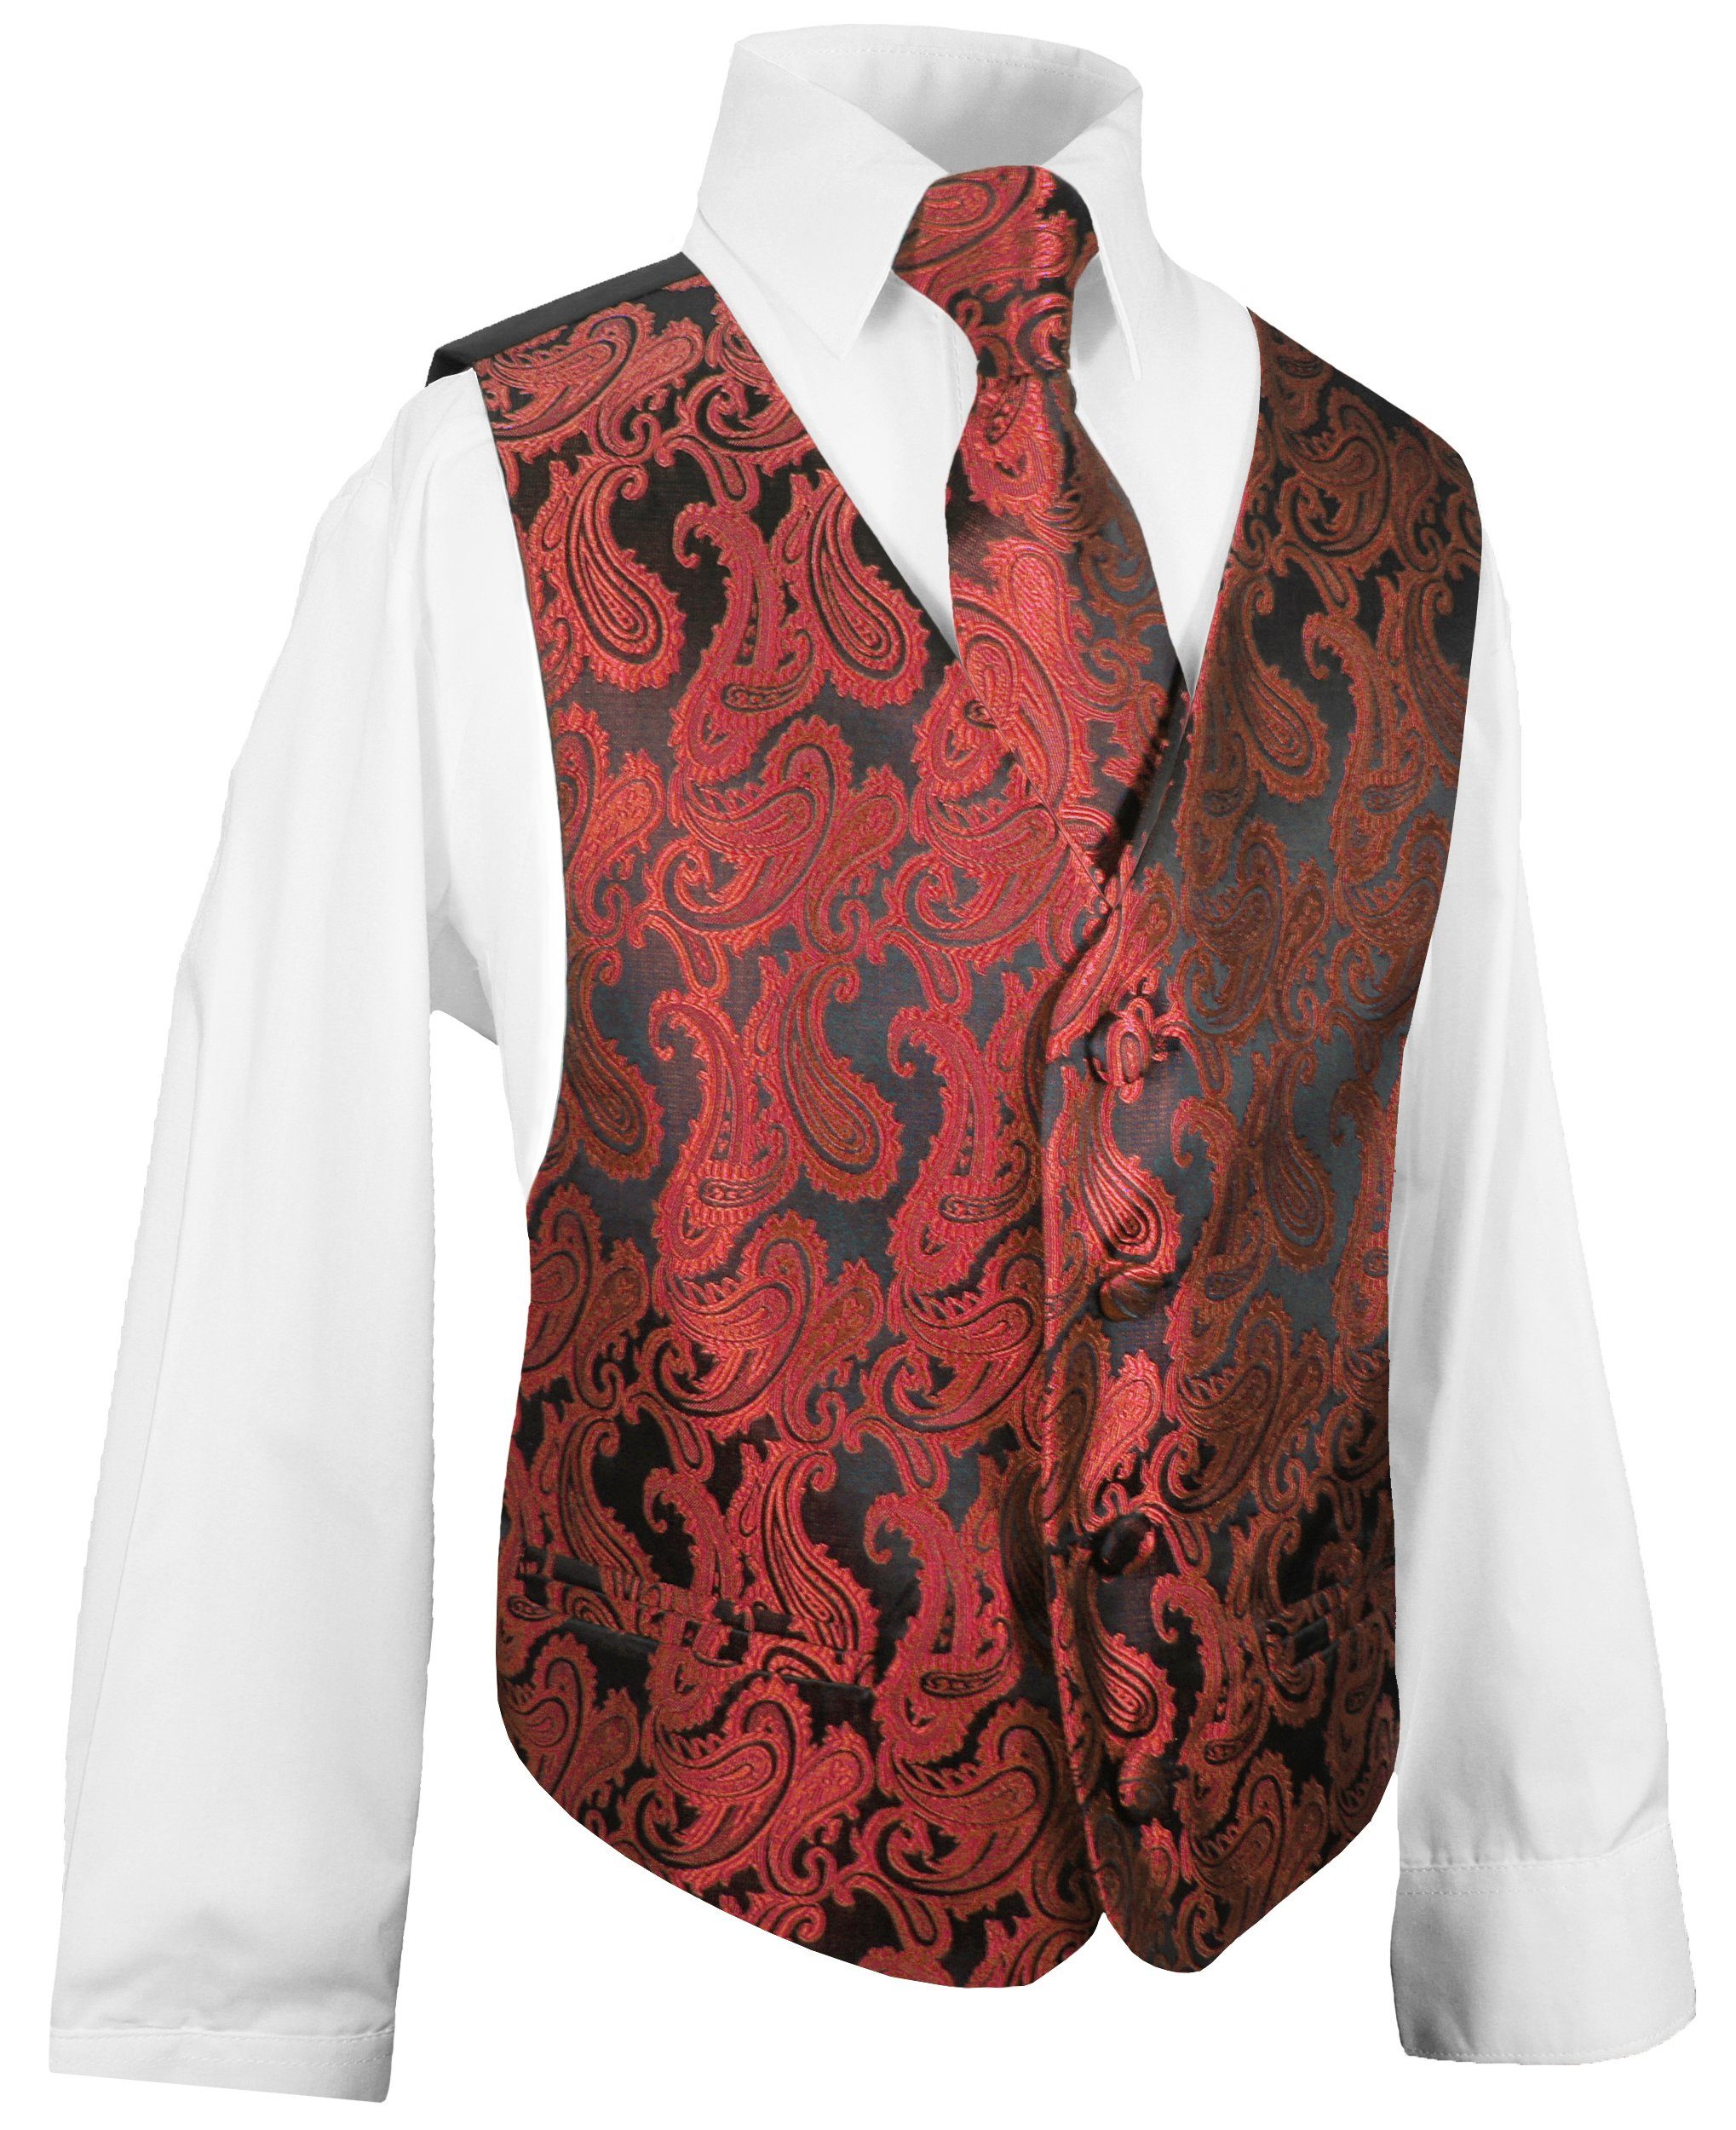 Paul Malone Anzugweste Festliche Kinderweste Jungenweste Kinder Anzug Weste (Set, 3-tlg., mit Weste, Hemd und Krawatte) rot KV99-Krawatte